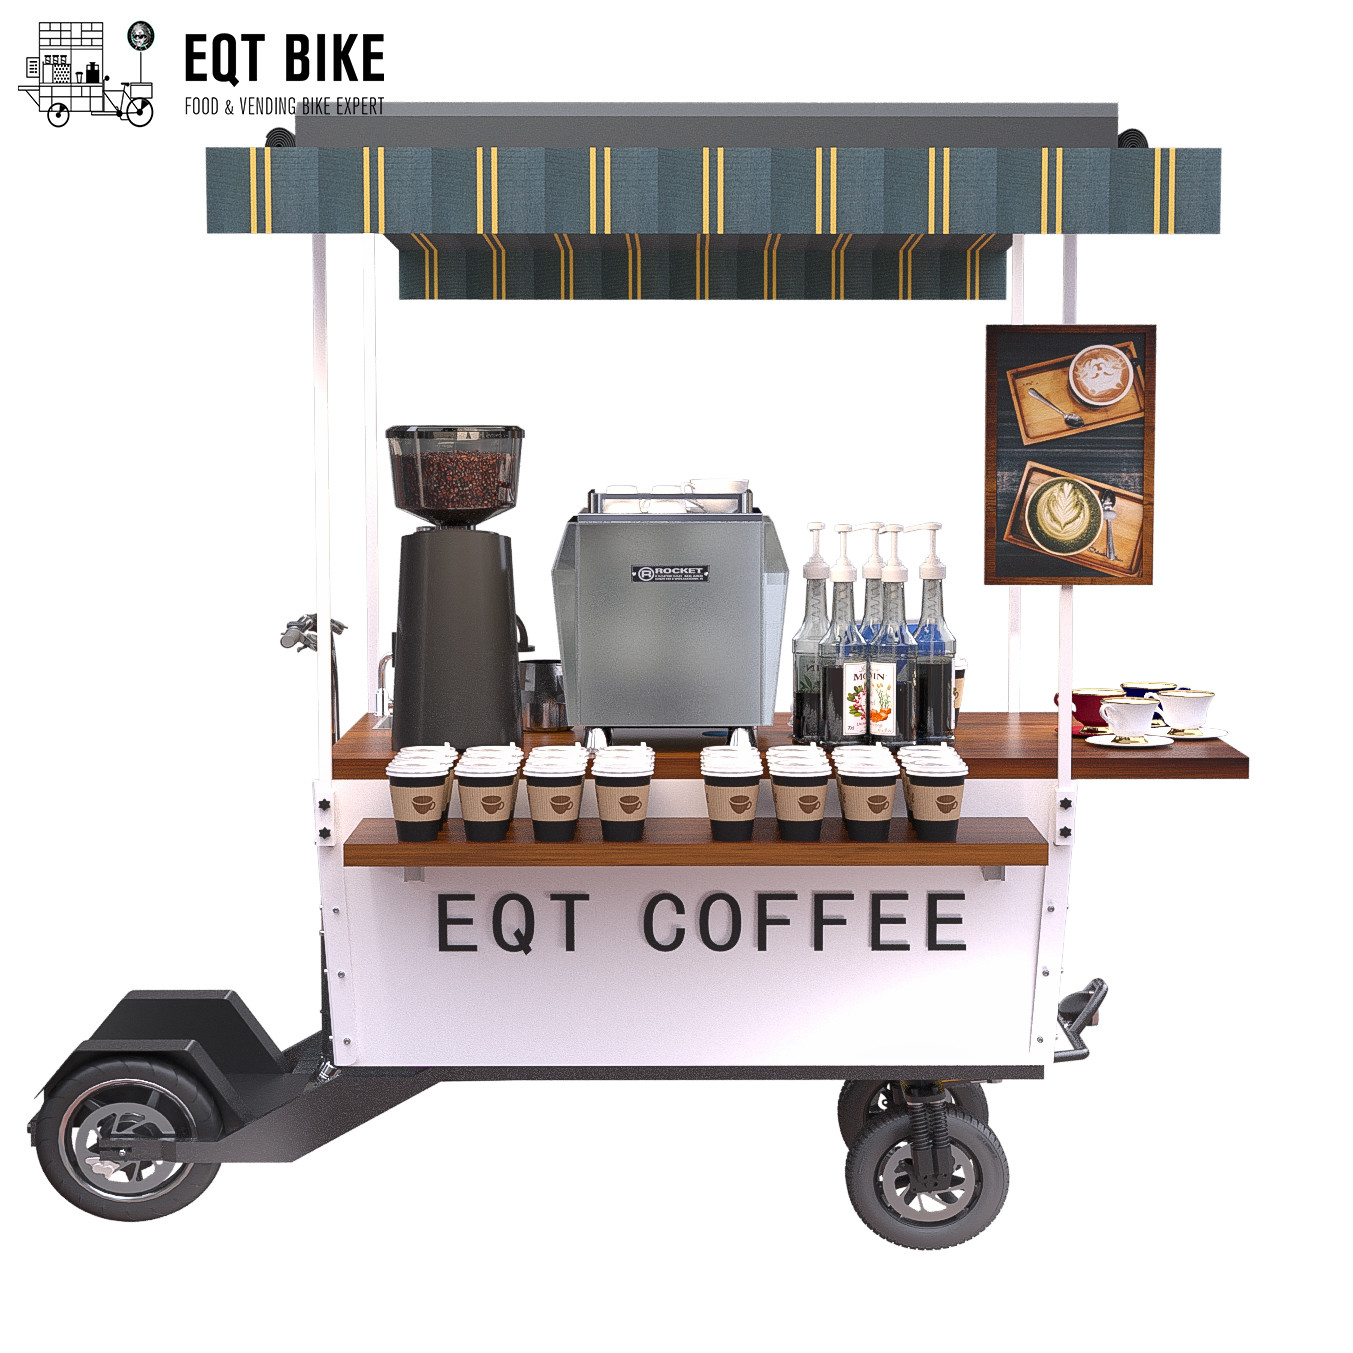 18KM/H che vende il carretto della bici del caffè della struttura del contenitore di motorino